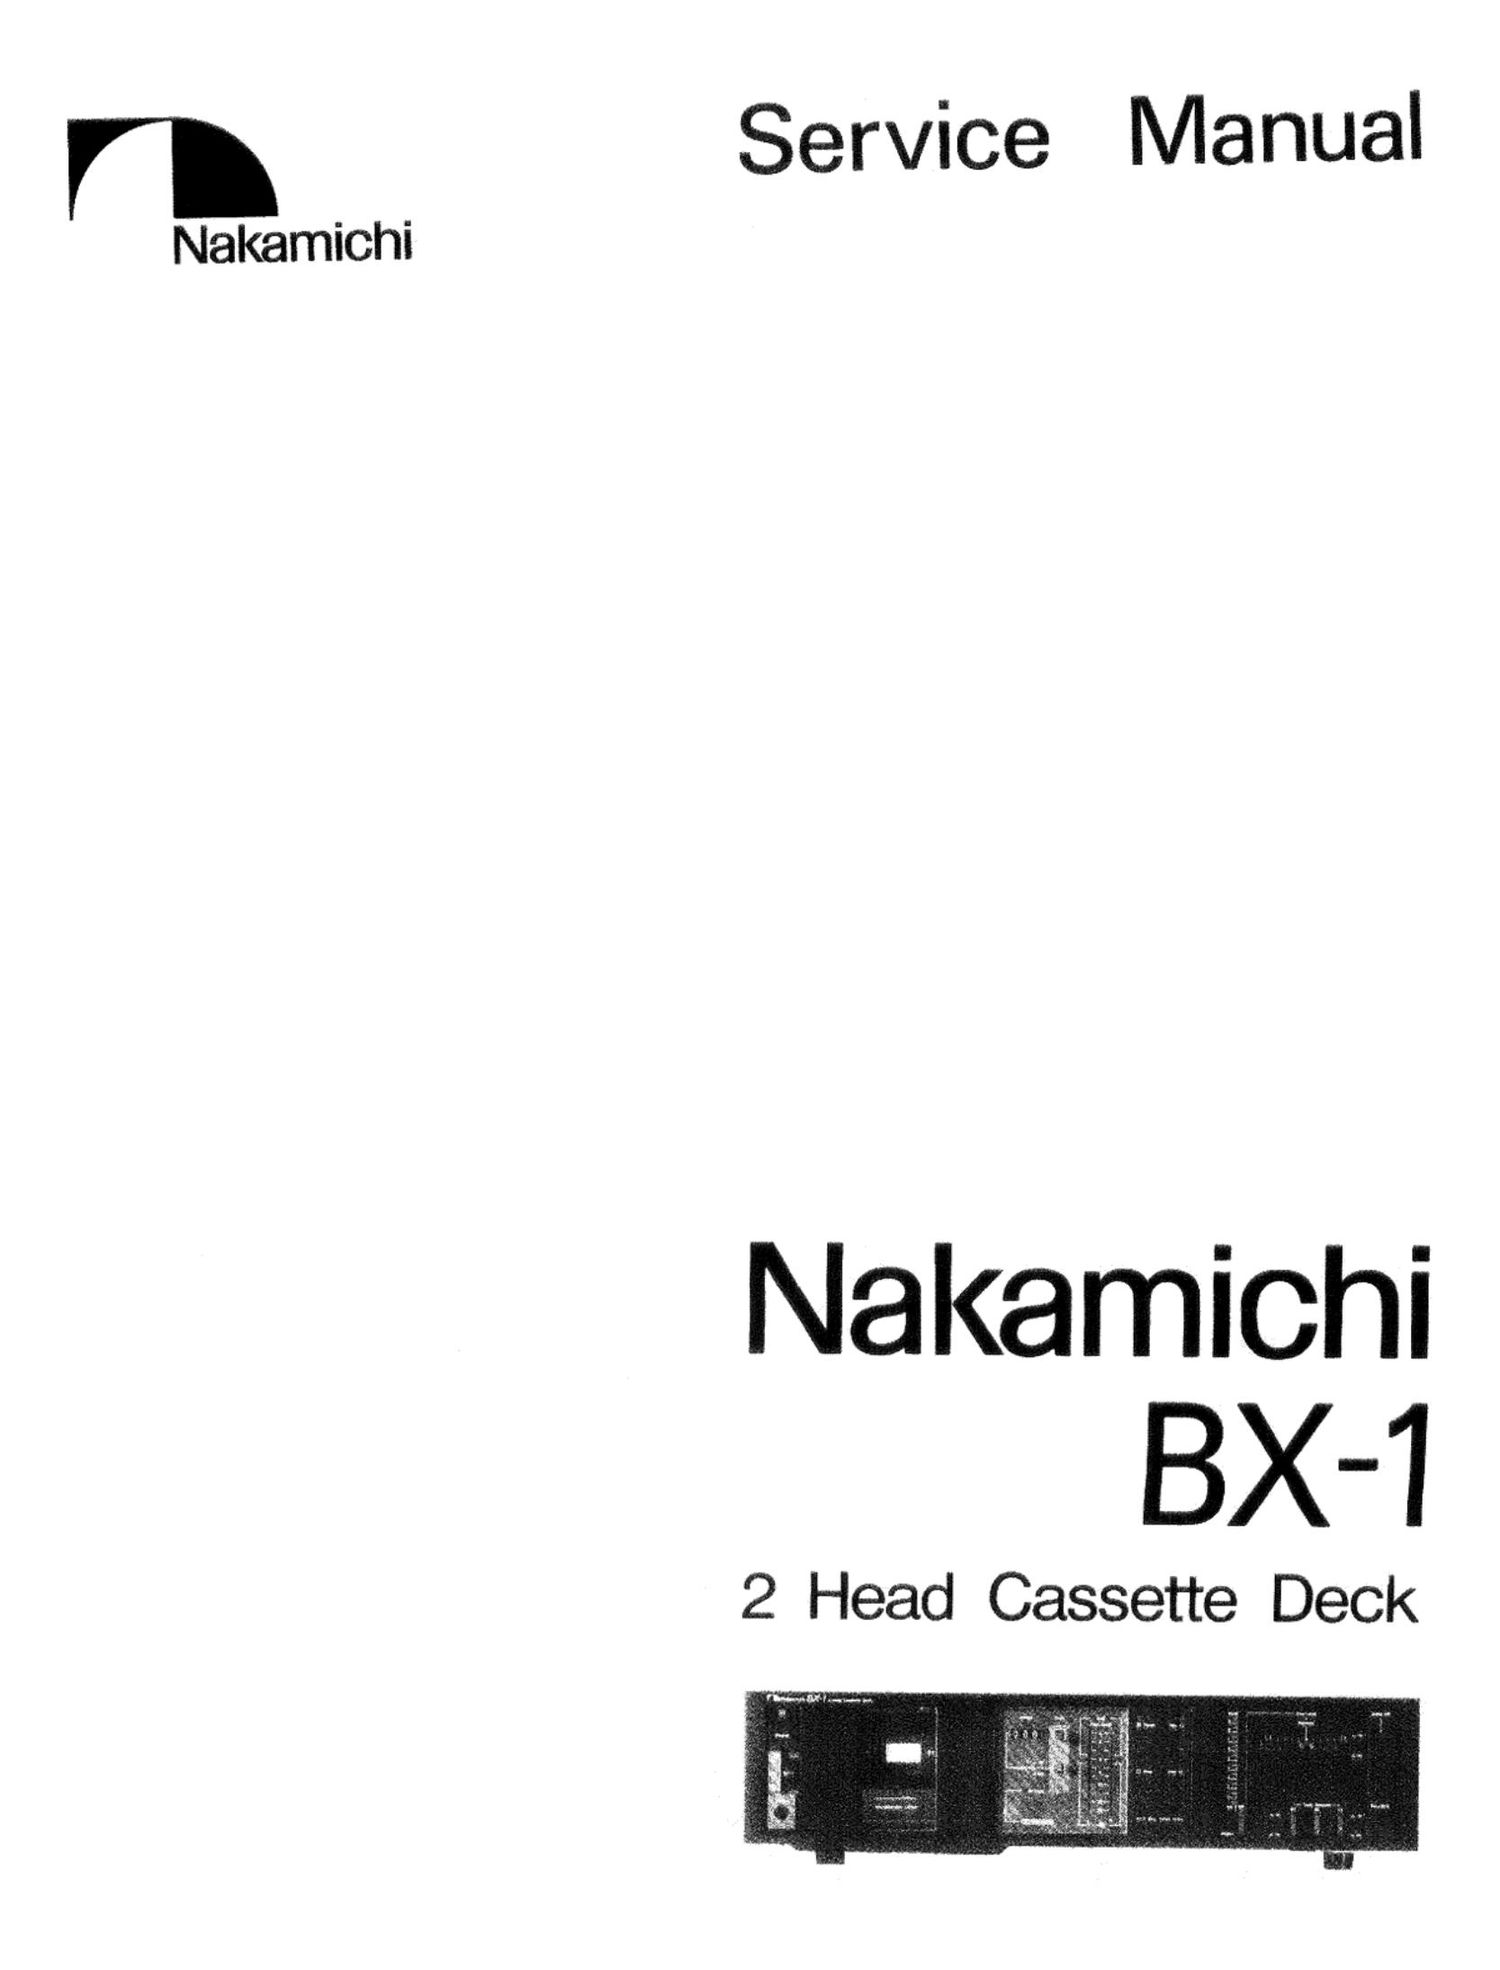 Nakamichi BX 1 Service Manual